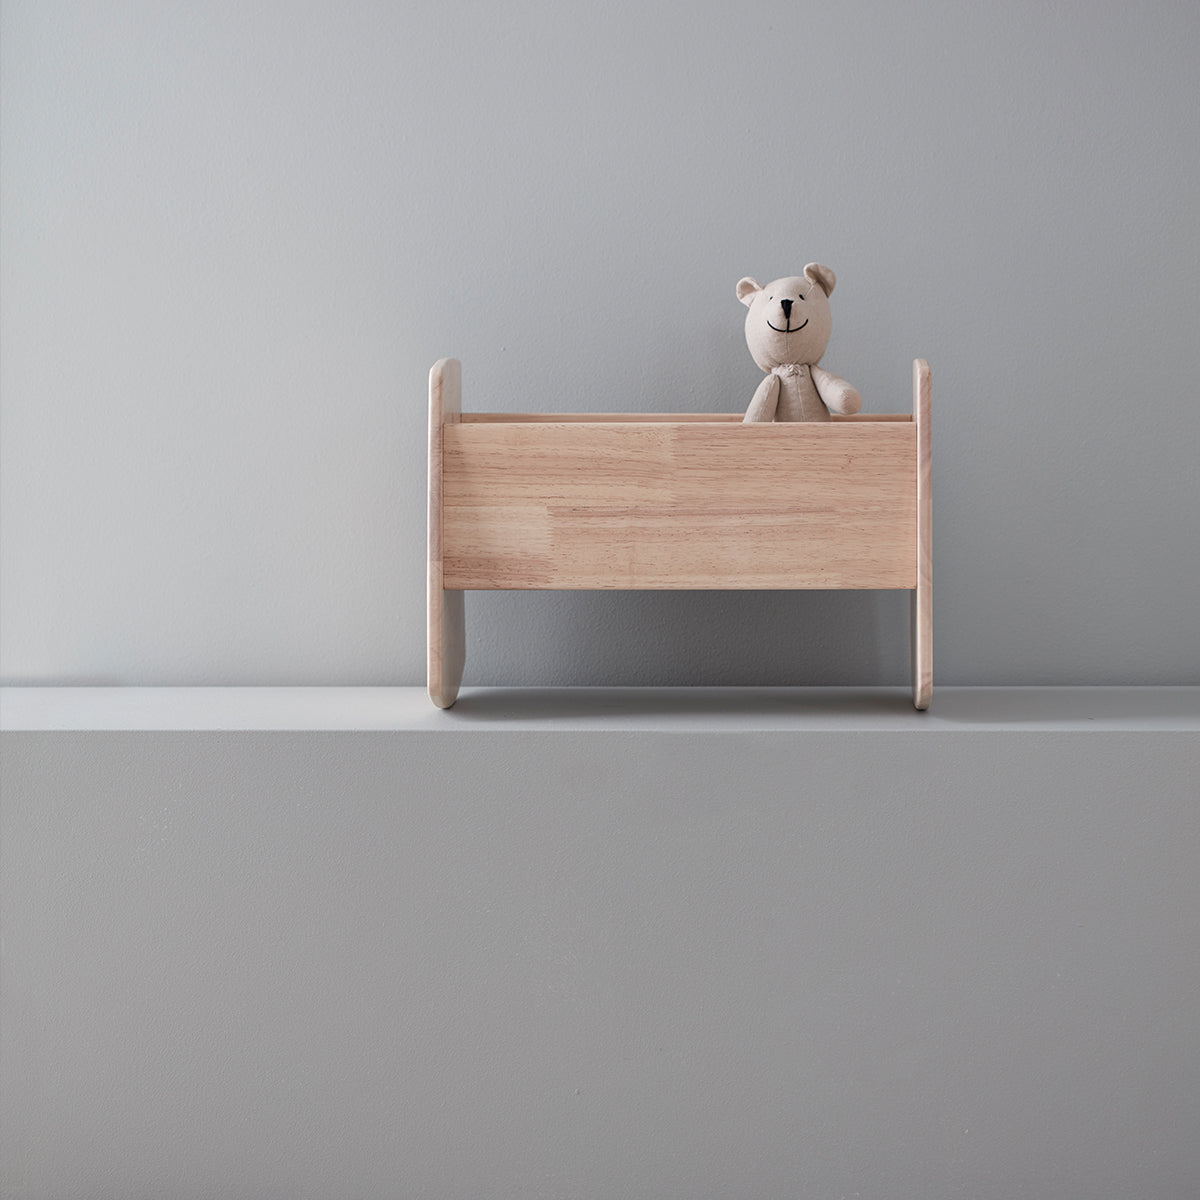 De Kid's Concept poppenwieg is een onmisbaar item voor op de slaapkamer van elke poppen papa of mama. Dit poppenbedje heeft dankzij het gebruikte hout een rustige en moderne uitstraling. VanZus.